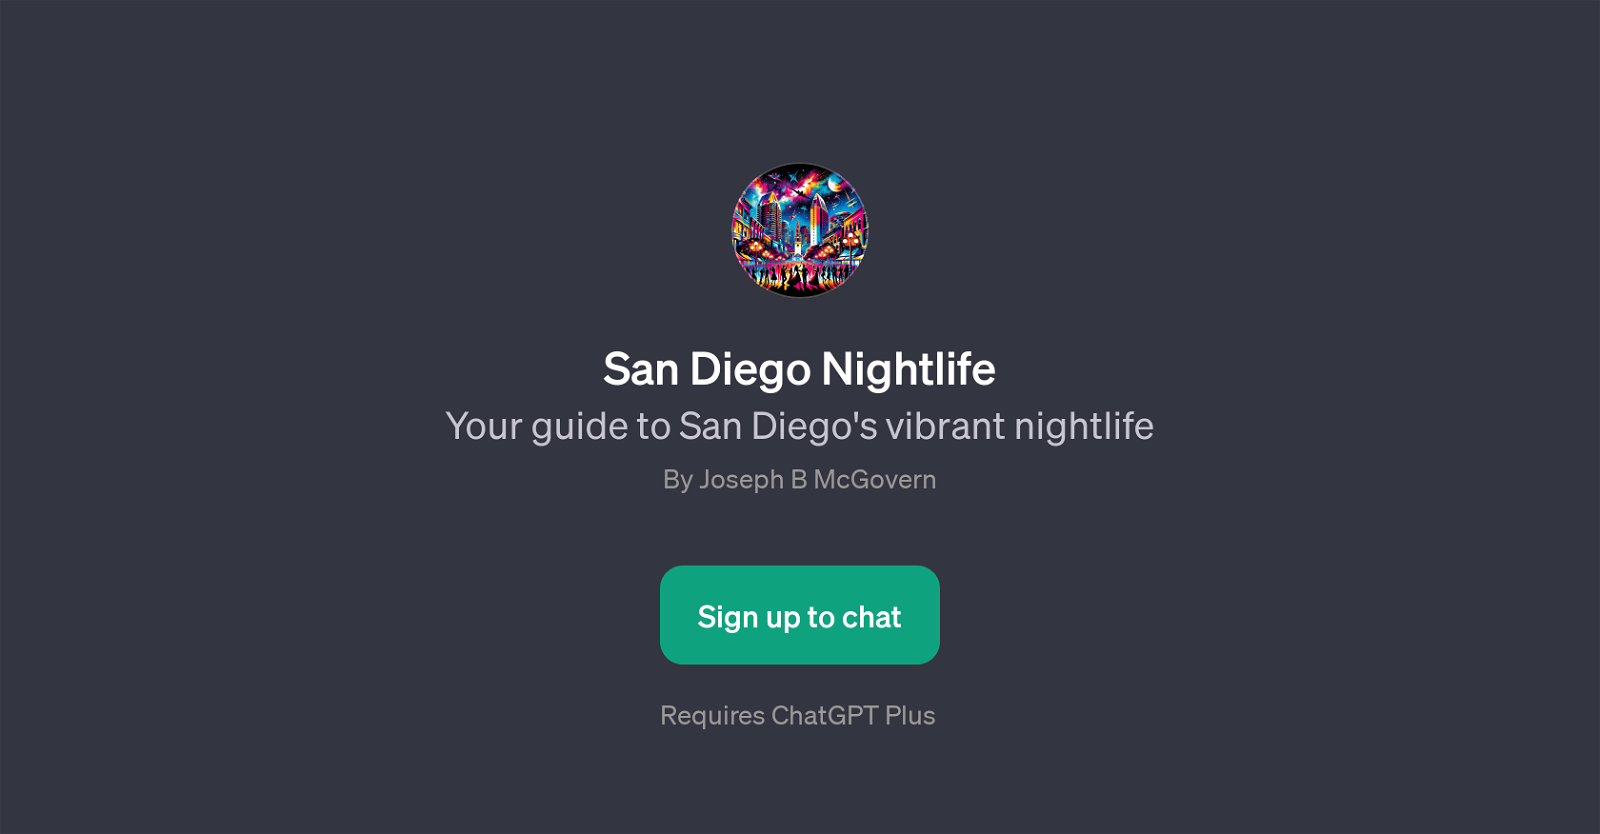 San Diego Nightlife website